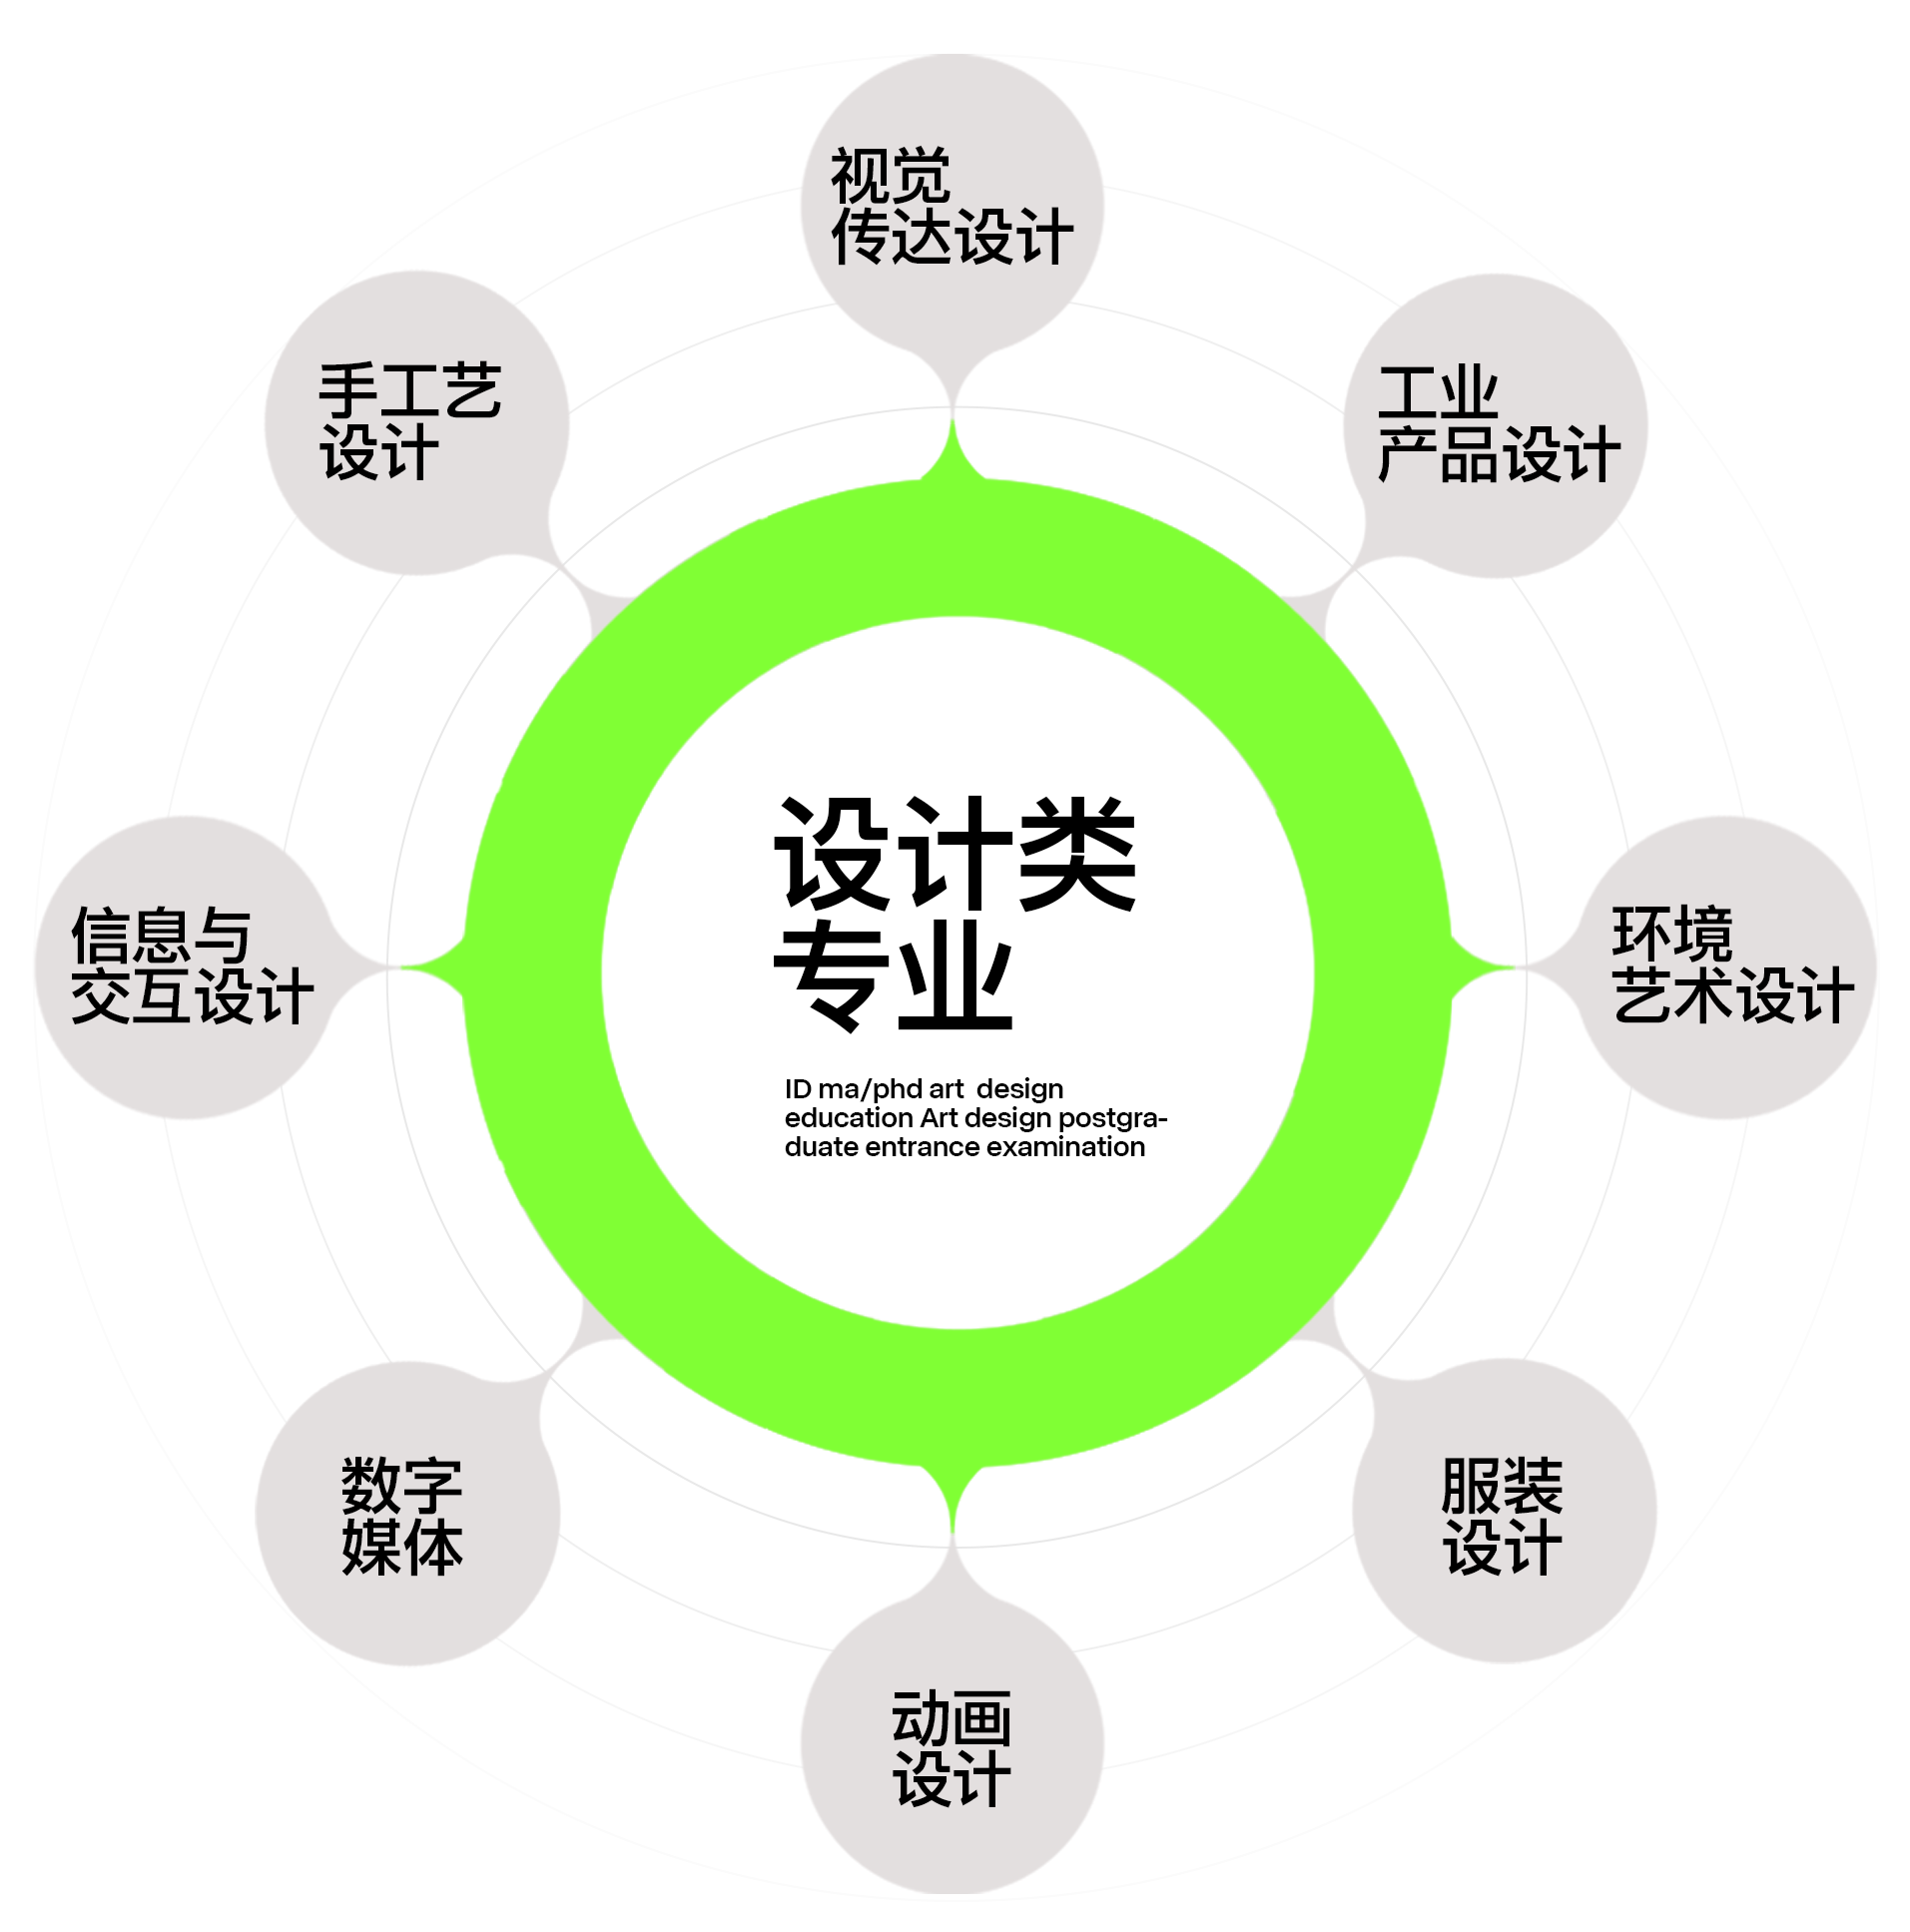 广州艾地24考研设计类专业早鸟课程招生简章